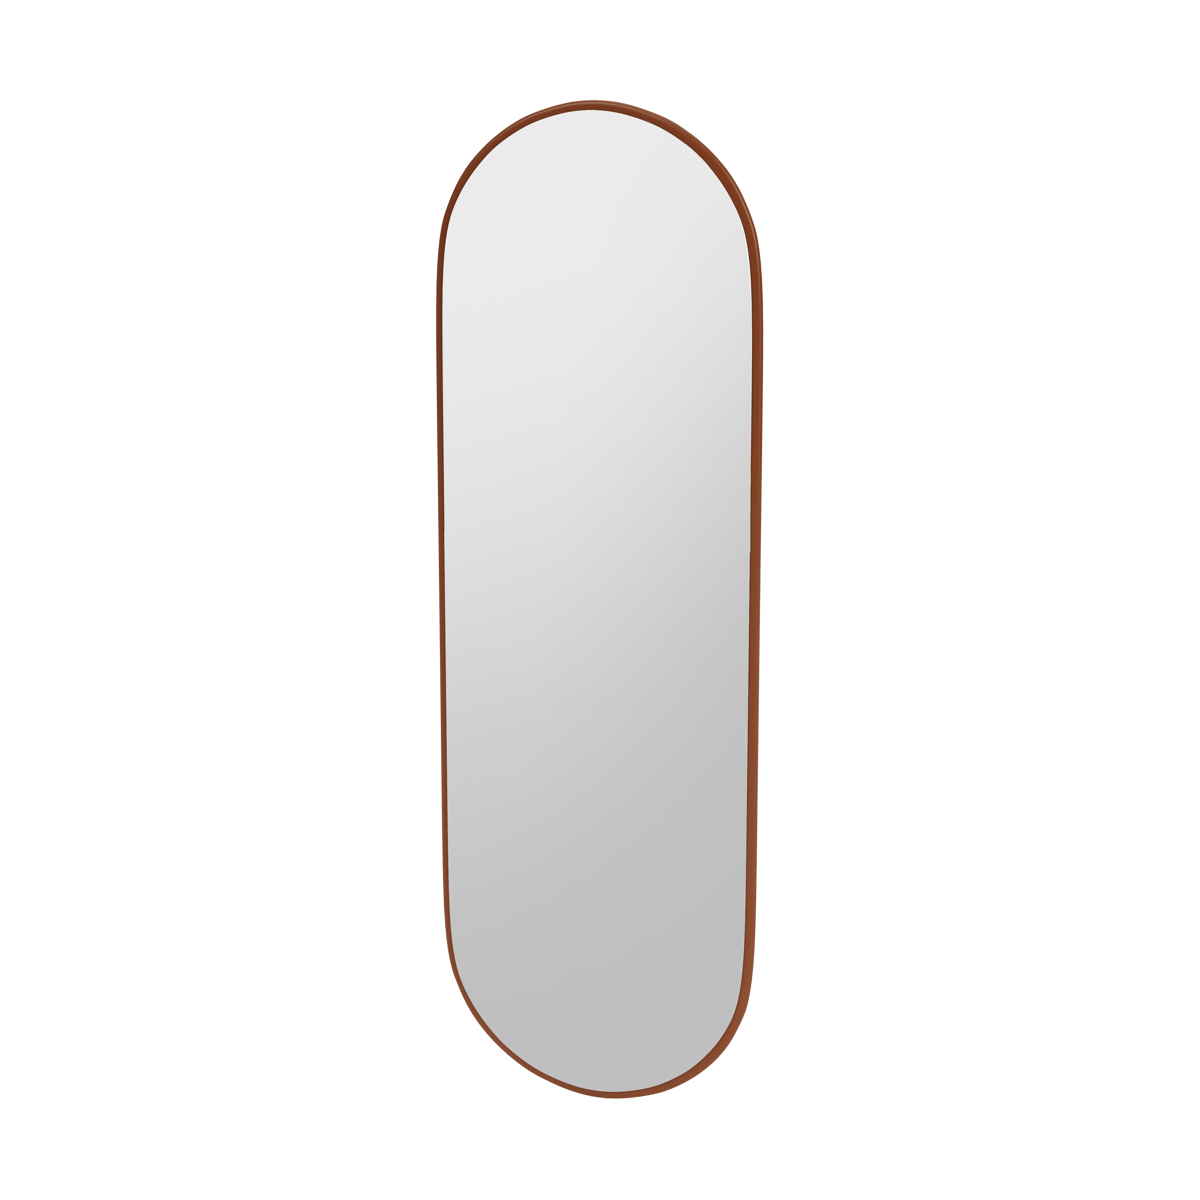 Montana FIGURE Mirror peili – SP824R Hazelnut